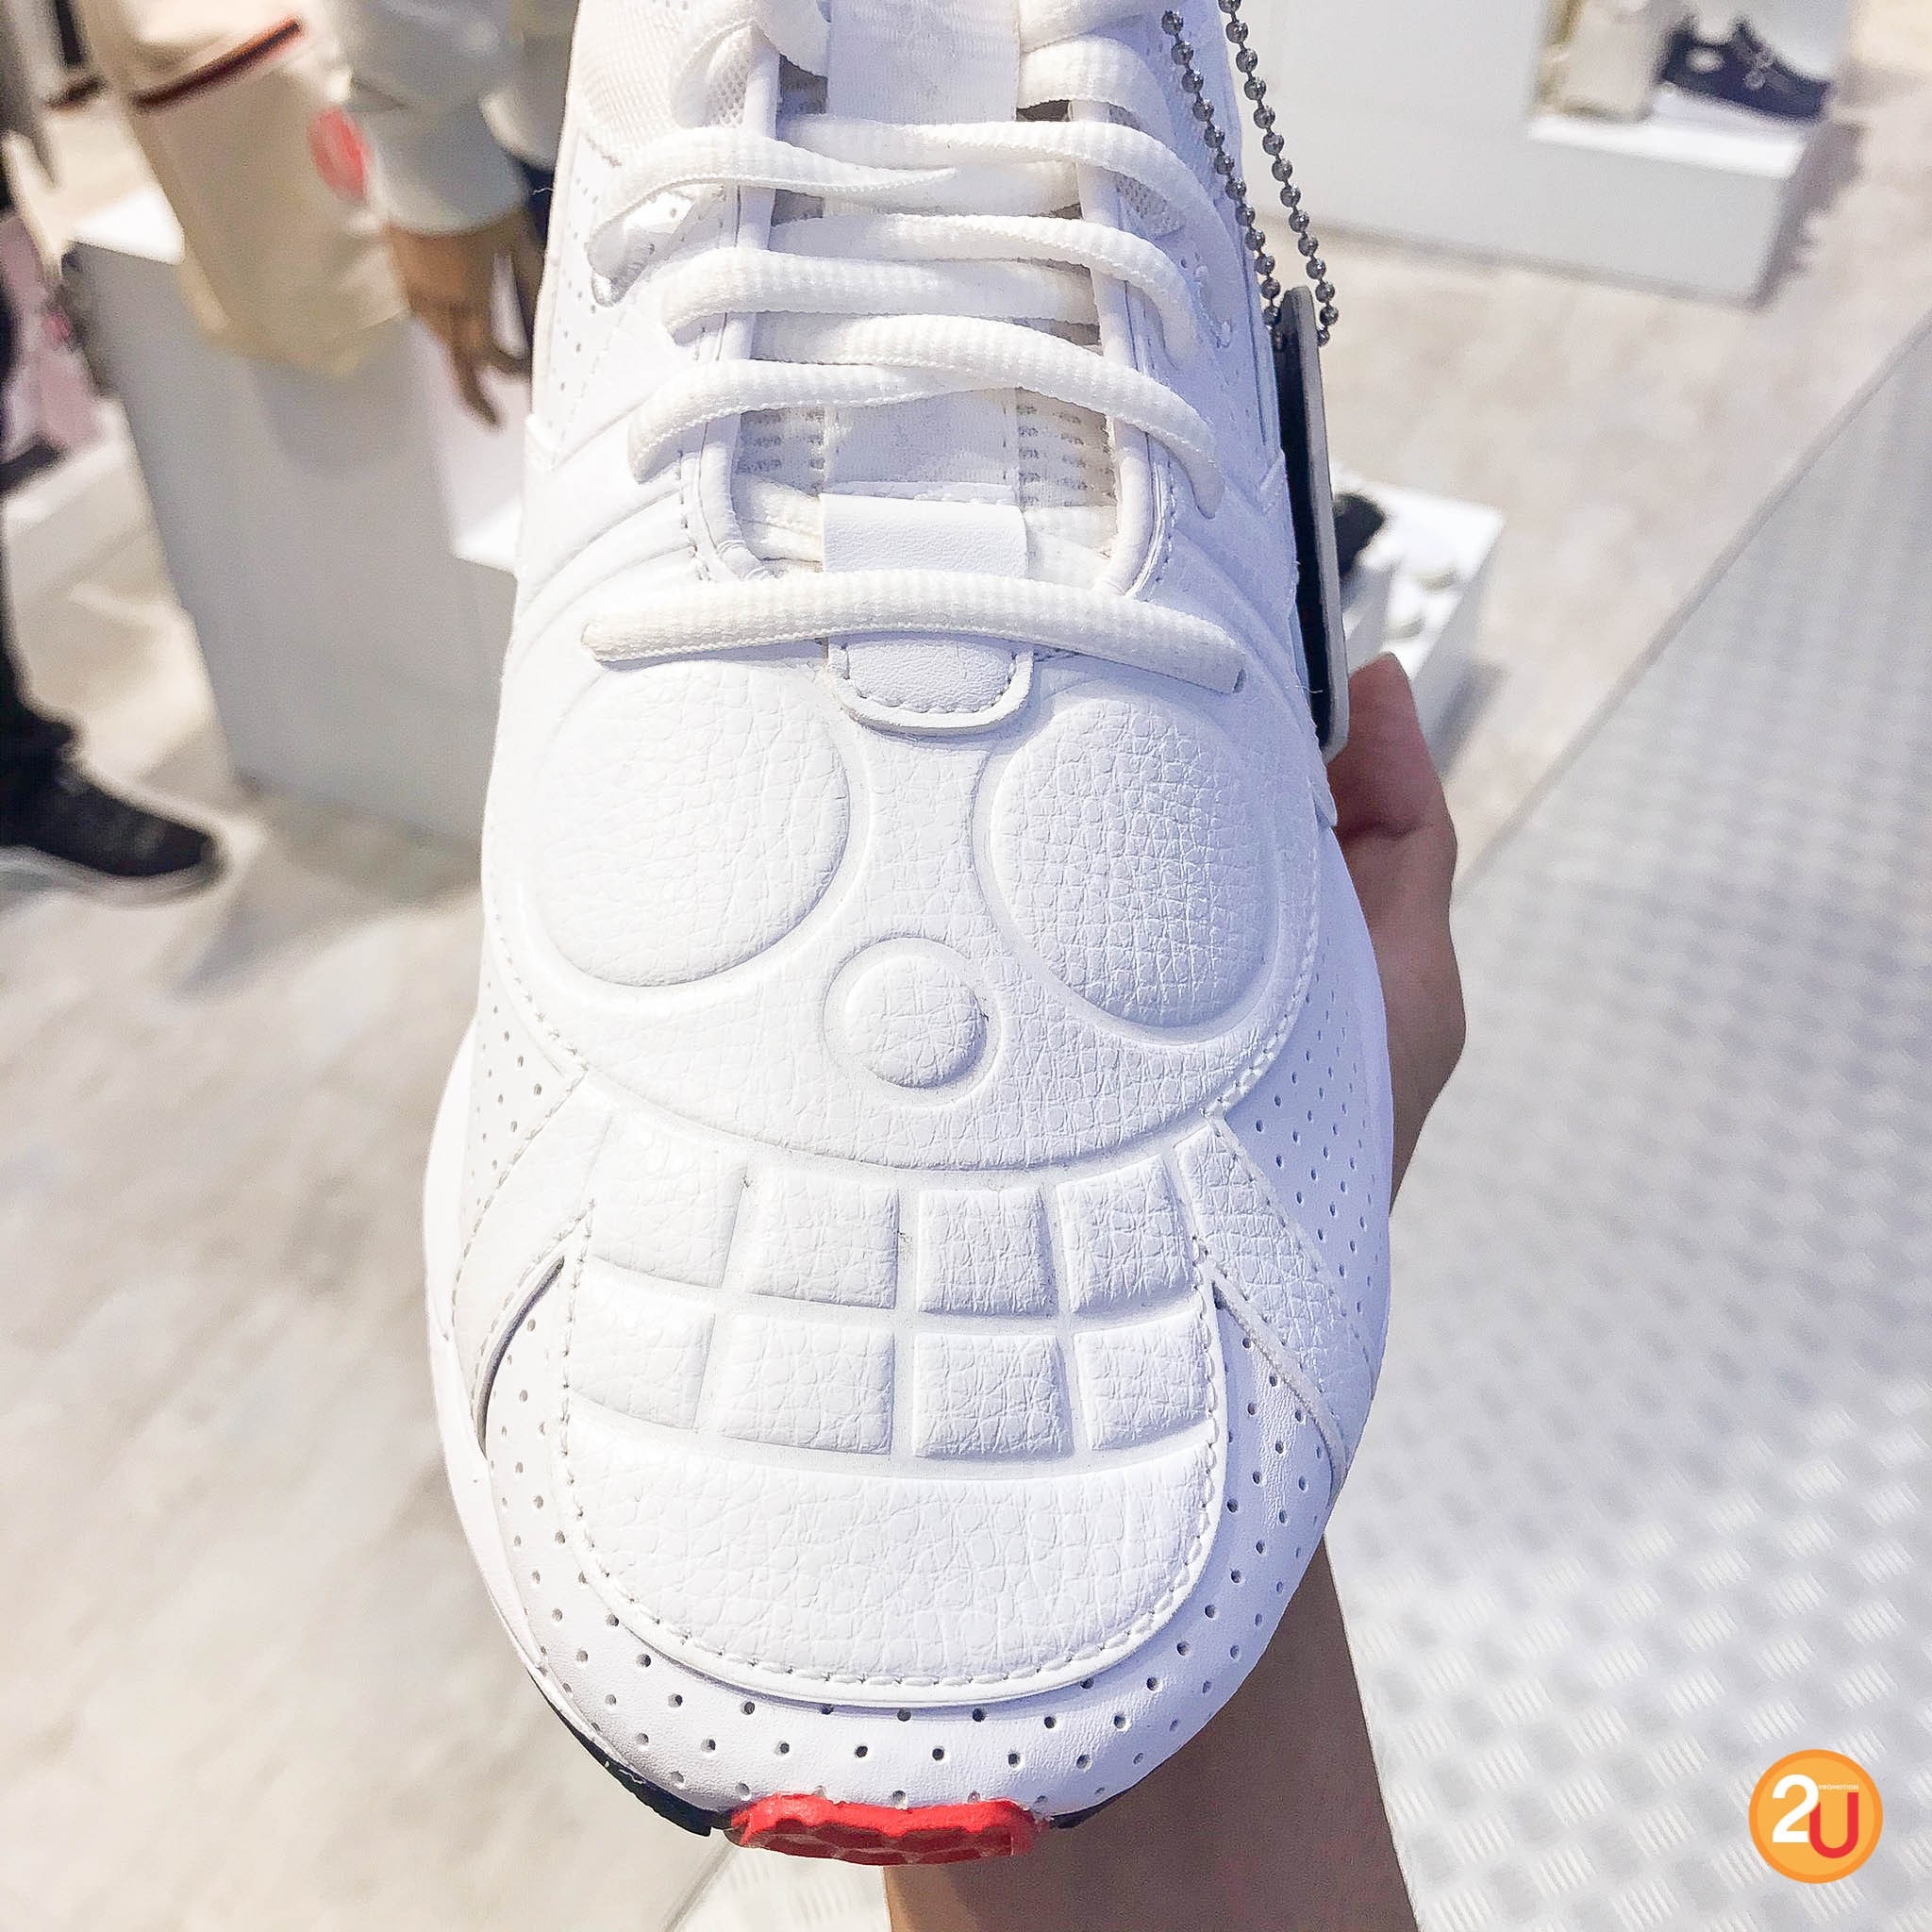 รองเท้า puma sneakers 2020 รุ่น one piece ด้านบนเป็นลายสัญลักษณ์ของกลุ่มหมวกฟาง